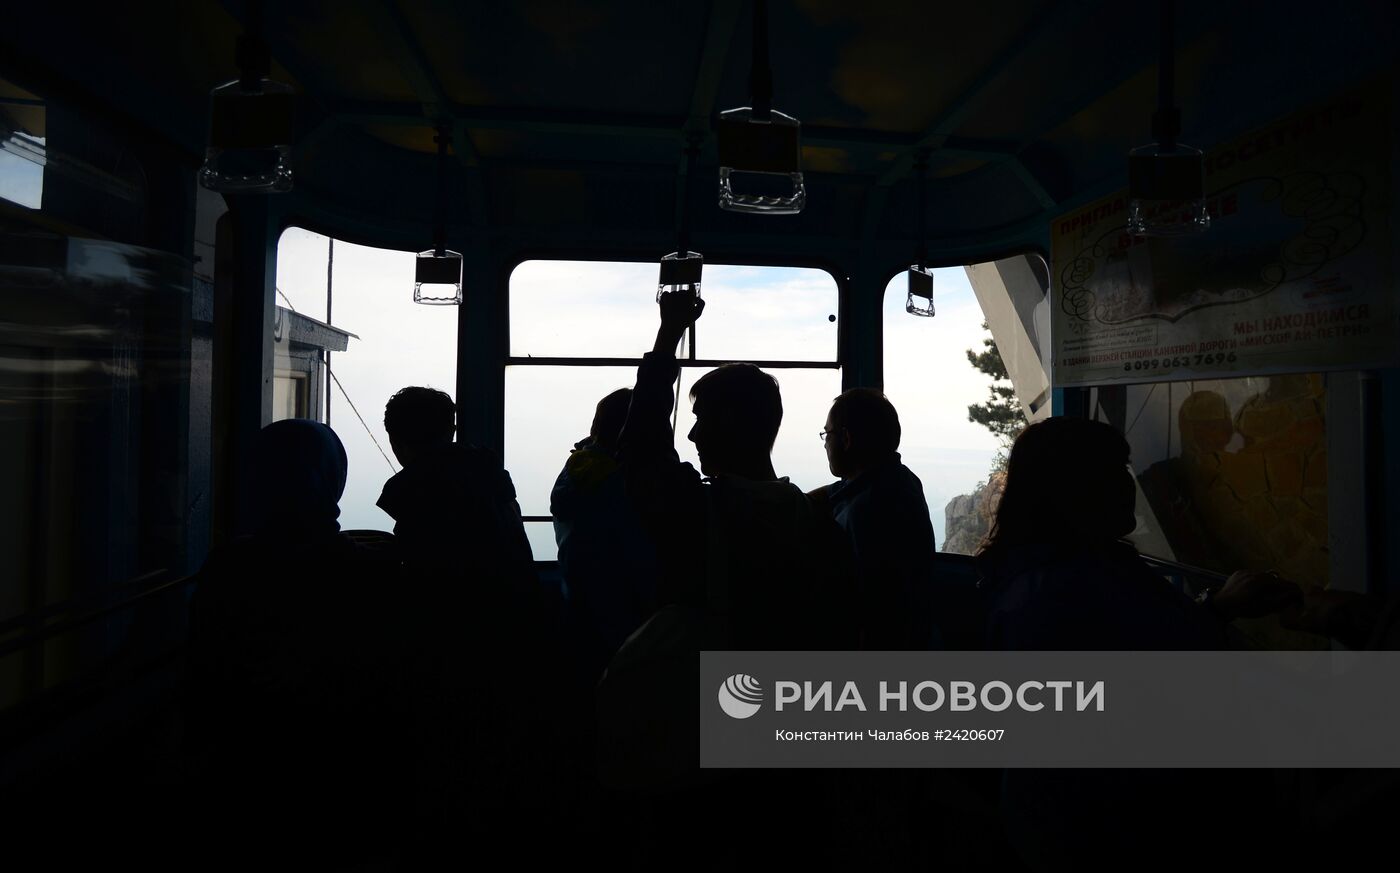 Открытие канатной дороги "Мисхор - Ай-Петри" в Крыму после ремонта